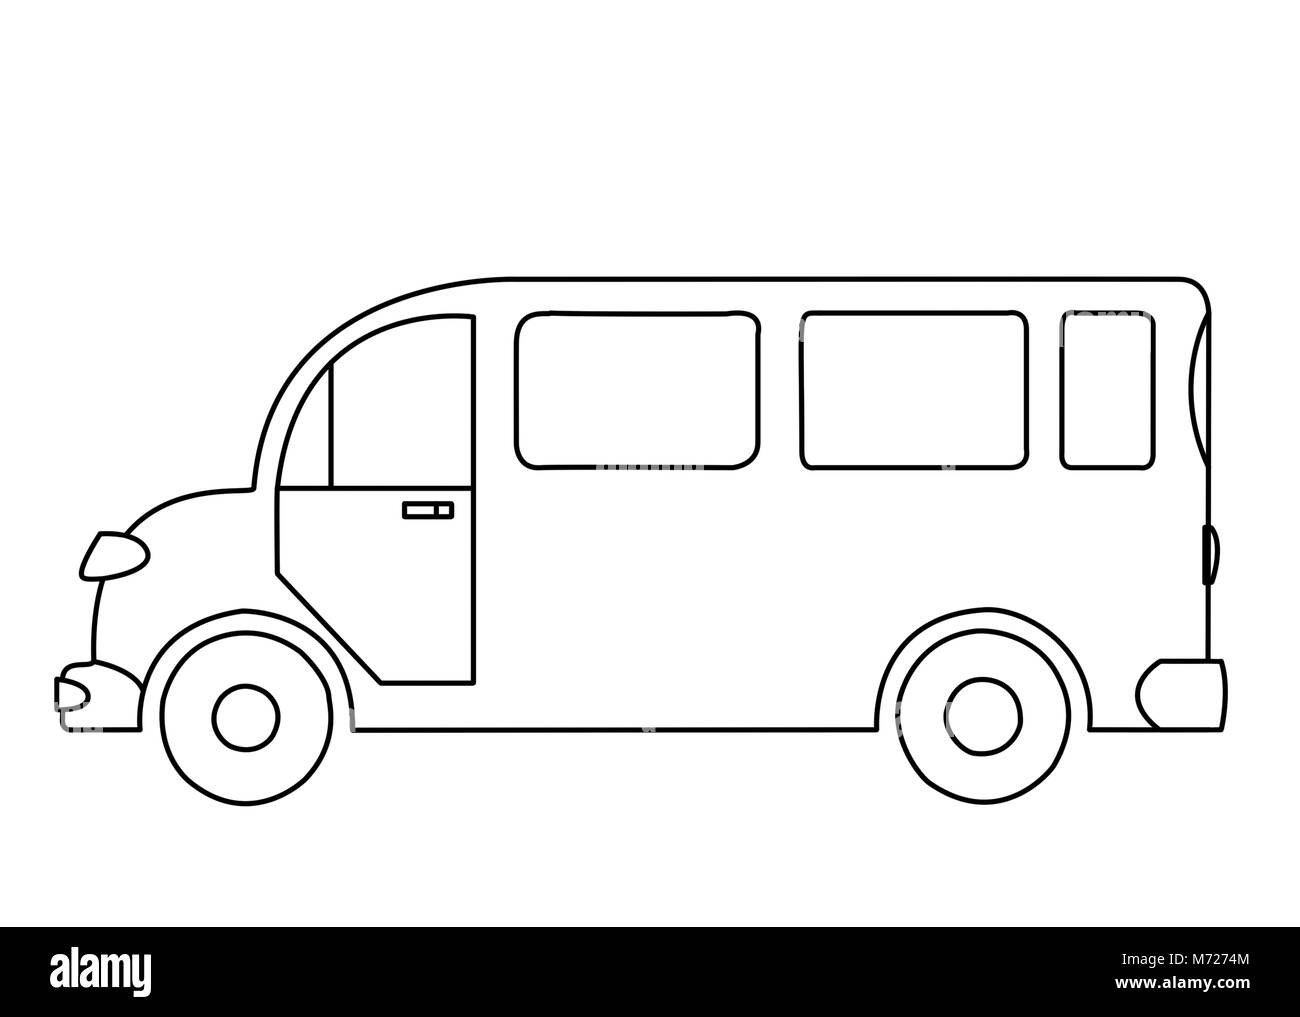 La silhouette profilée d'un bus de voyageurs sur fond blanc Banque D'Images